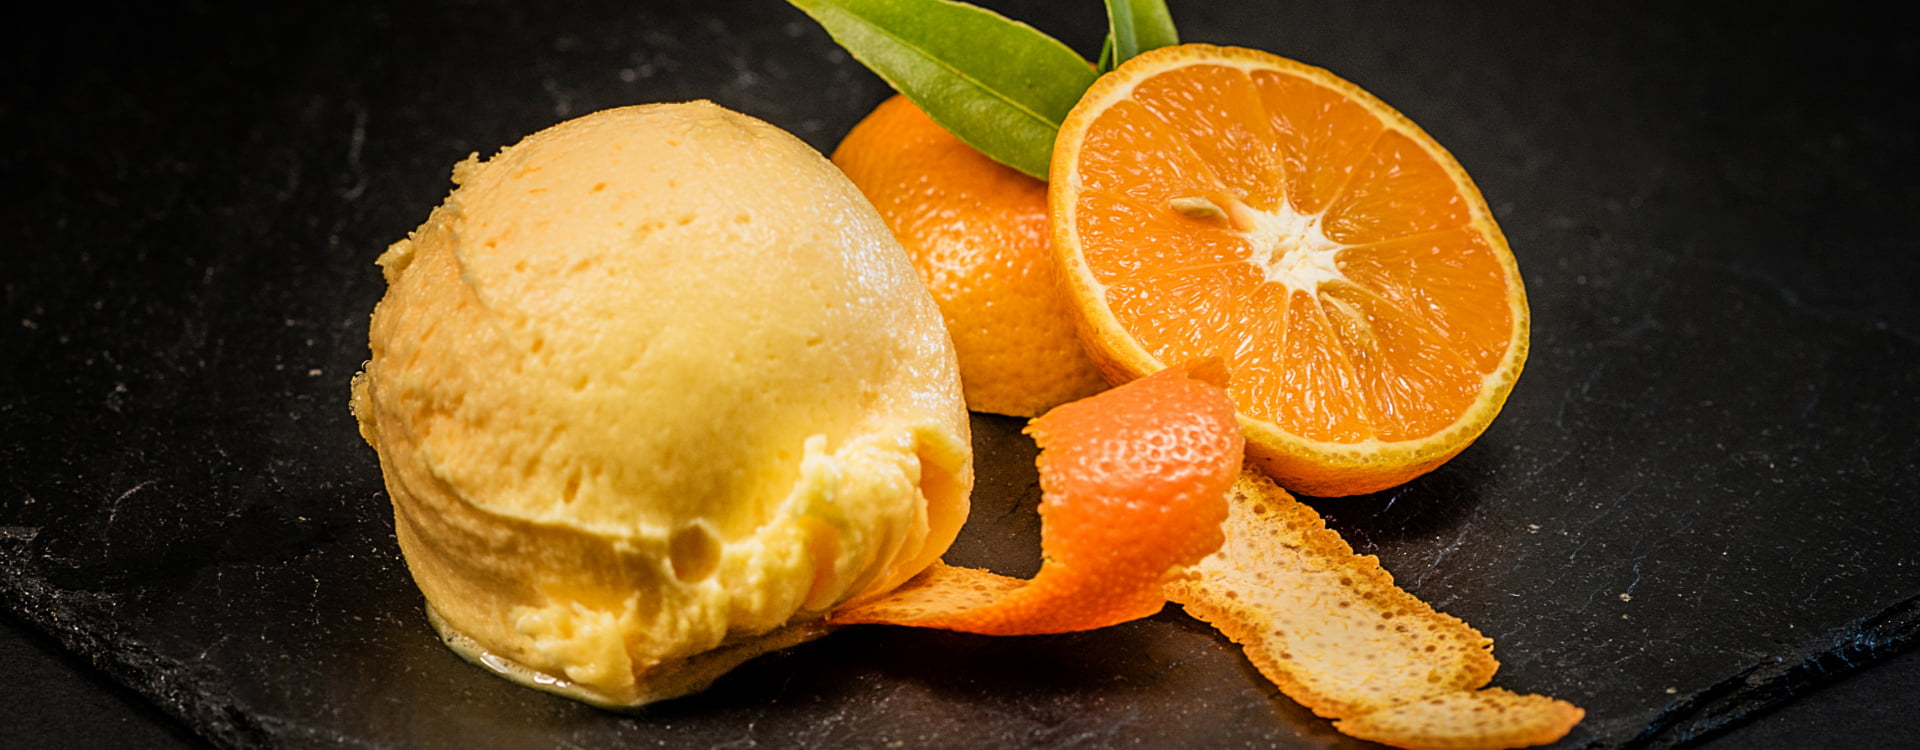 Plato de postre con helado y naranja